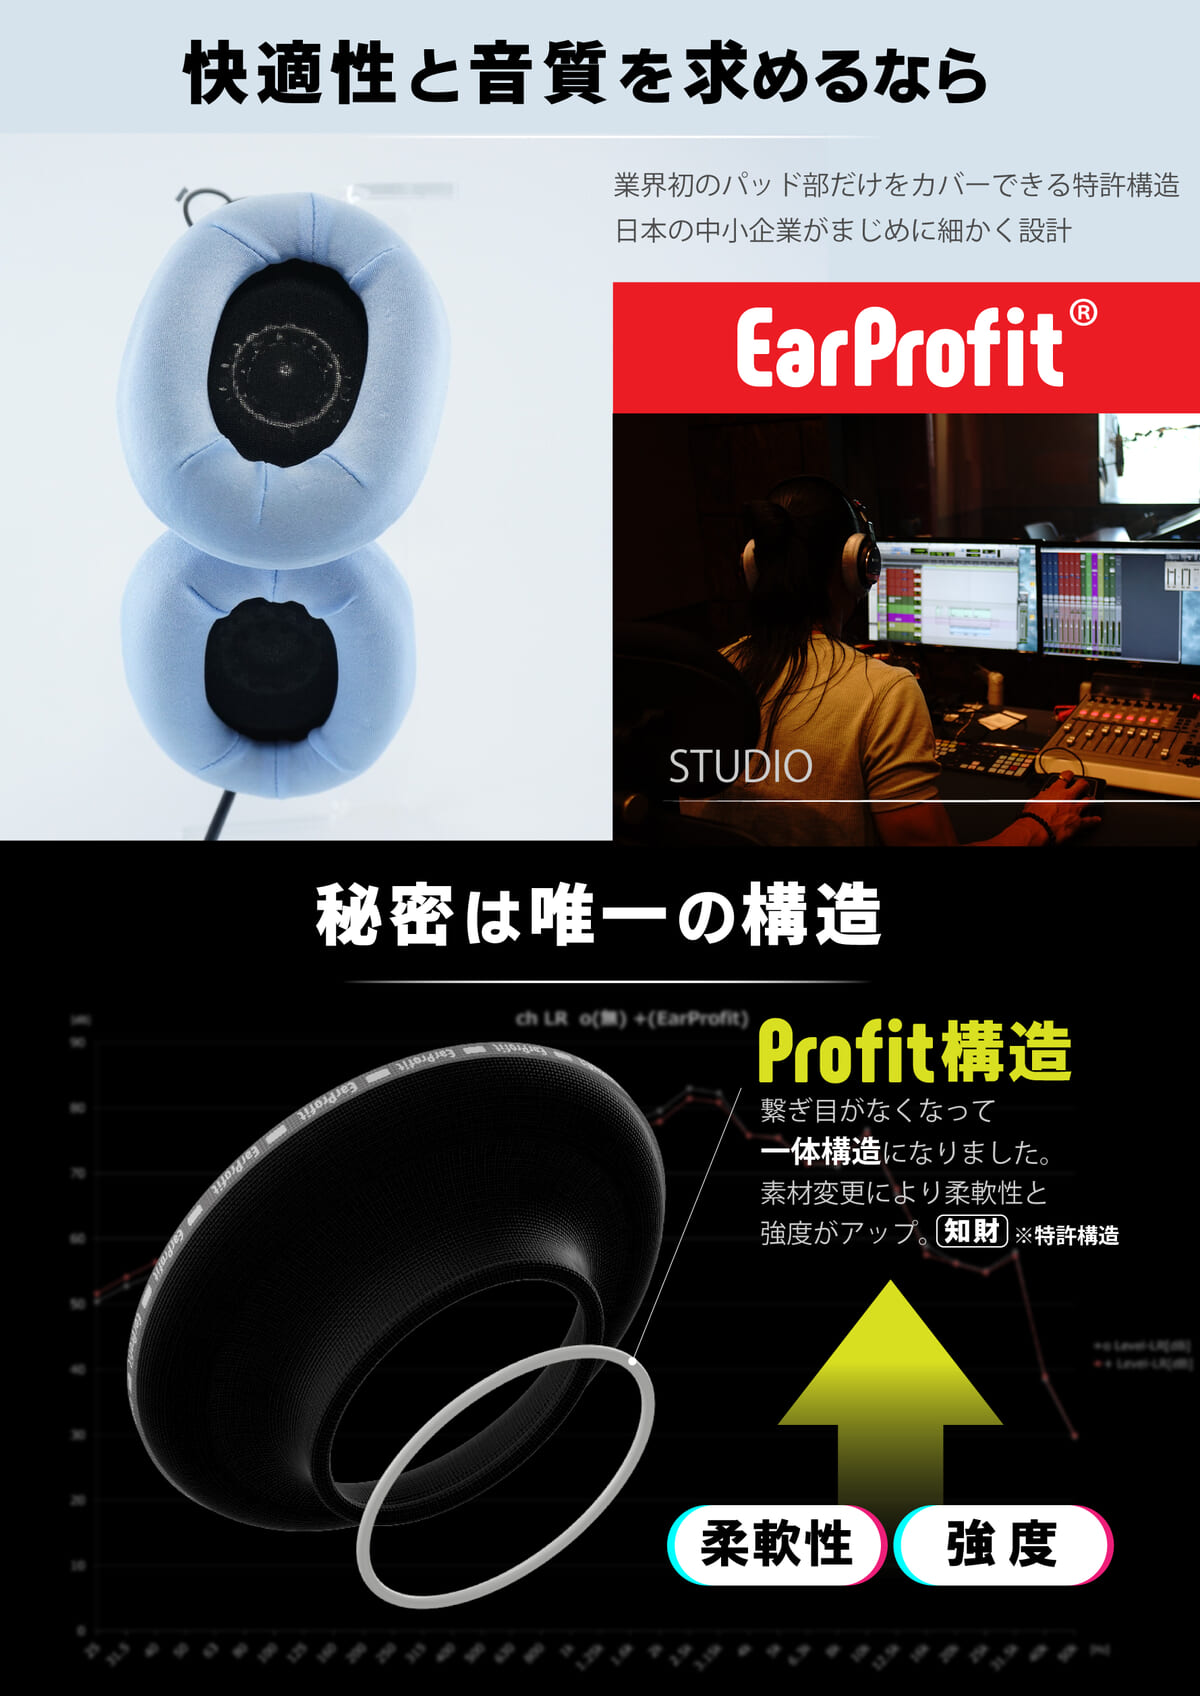 Heart of TOKYO「EarProfit」1